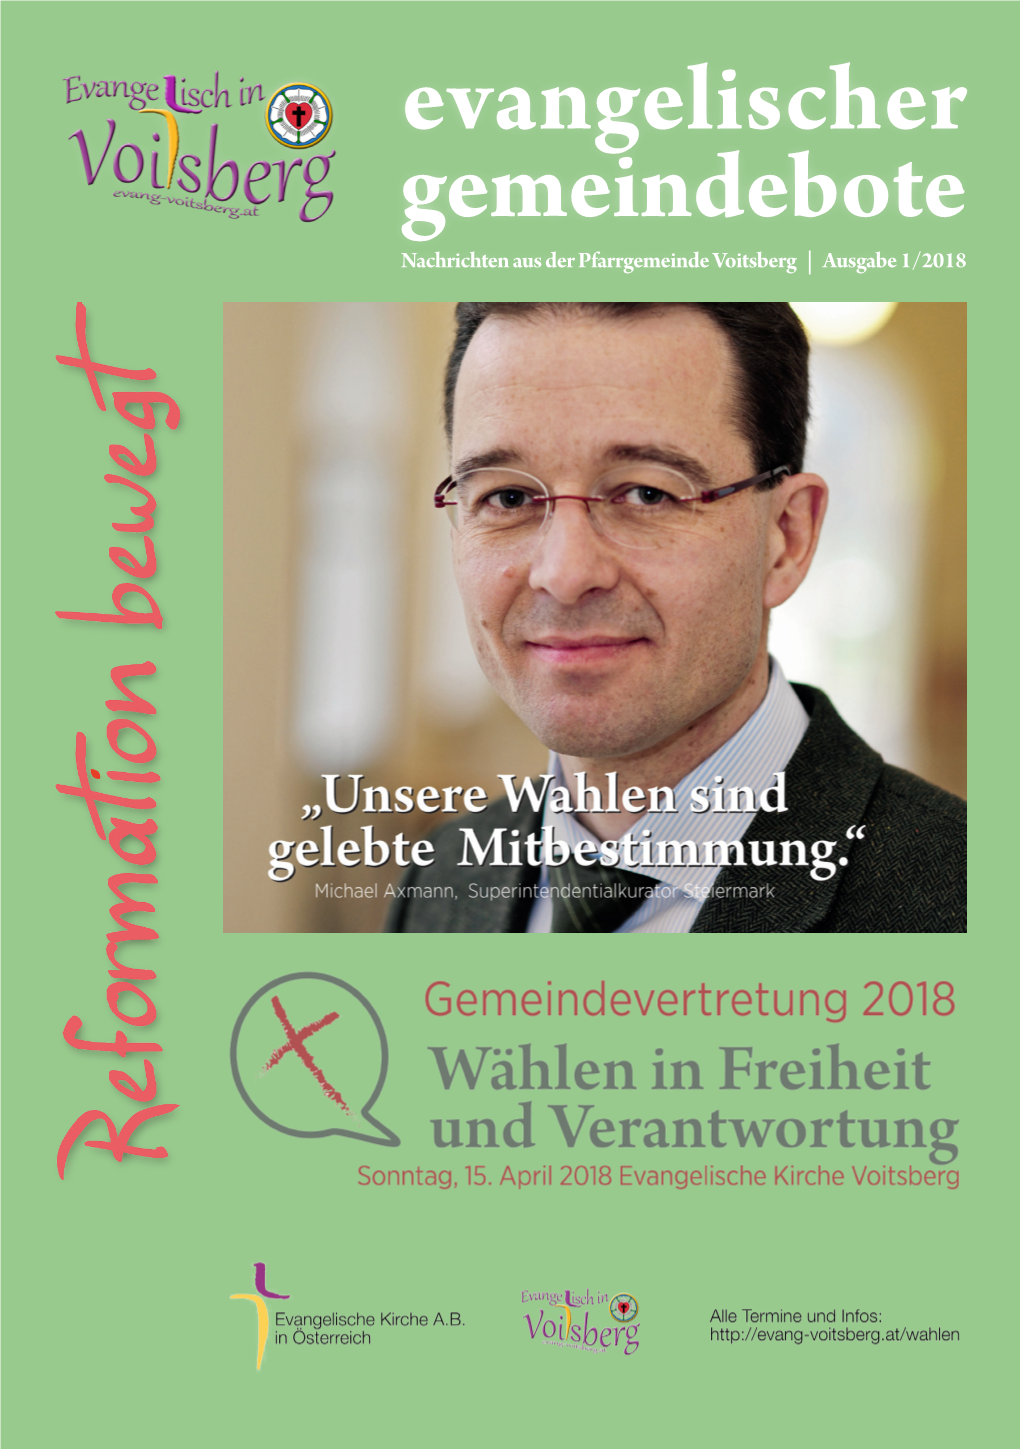 Evangelischer Gemeindebote Nachrichten Aus Der Pfarrgemeinde Voitsberg | Ausgabe 1/2018 Seite 2 Evangelischer Gemeindebote